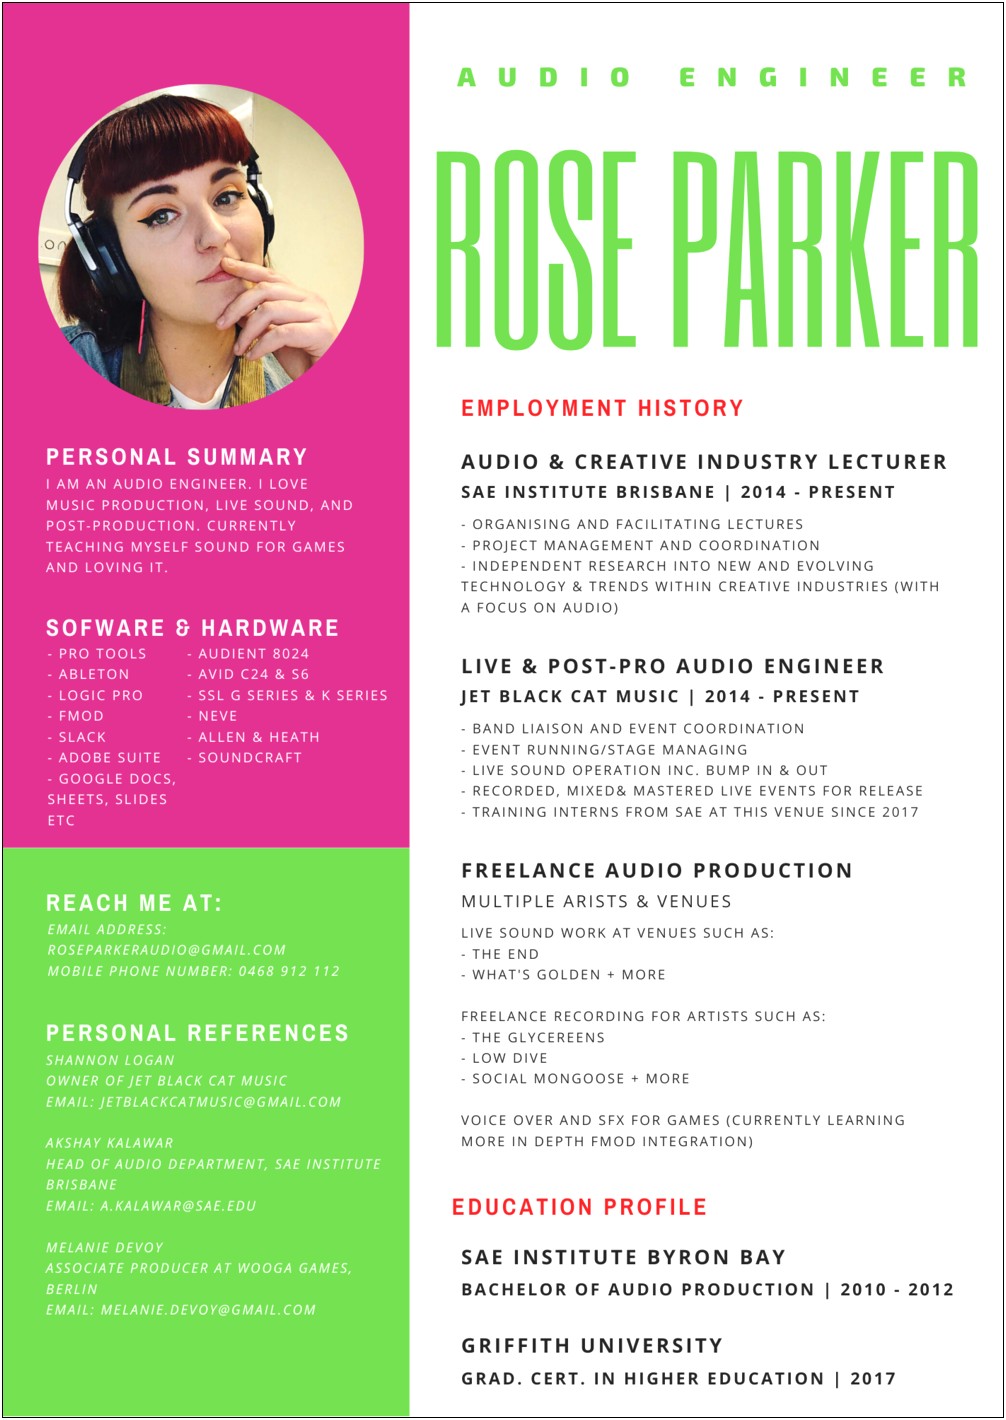 Live Sound Engineer Description For Resume